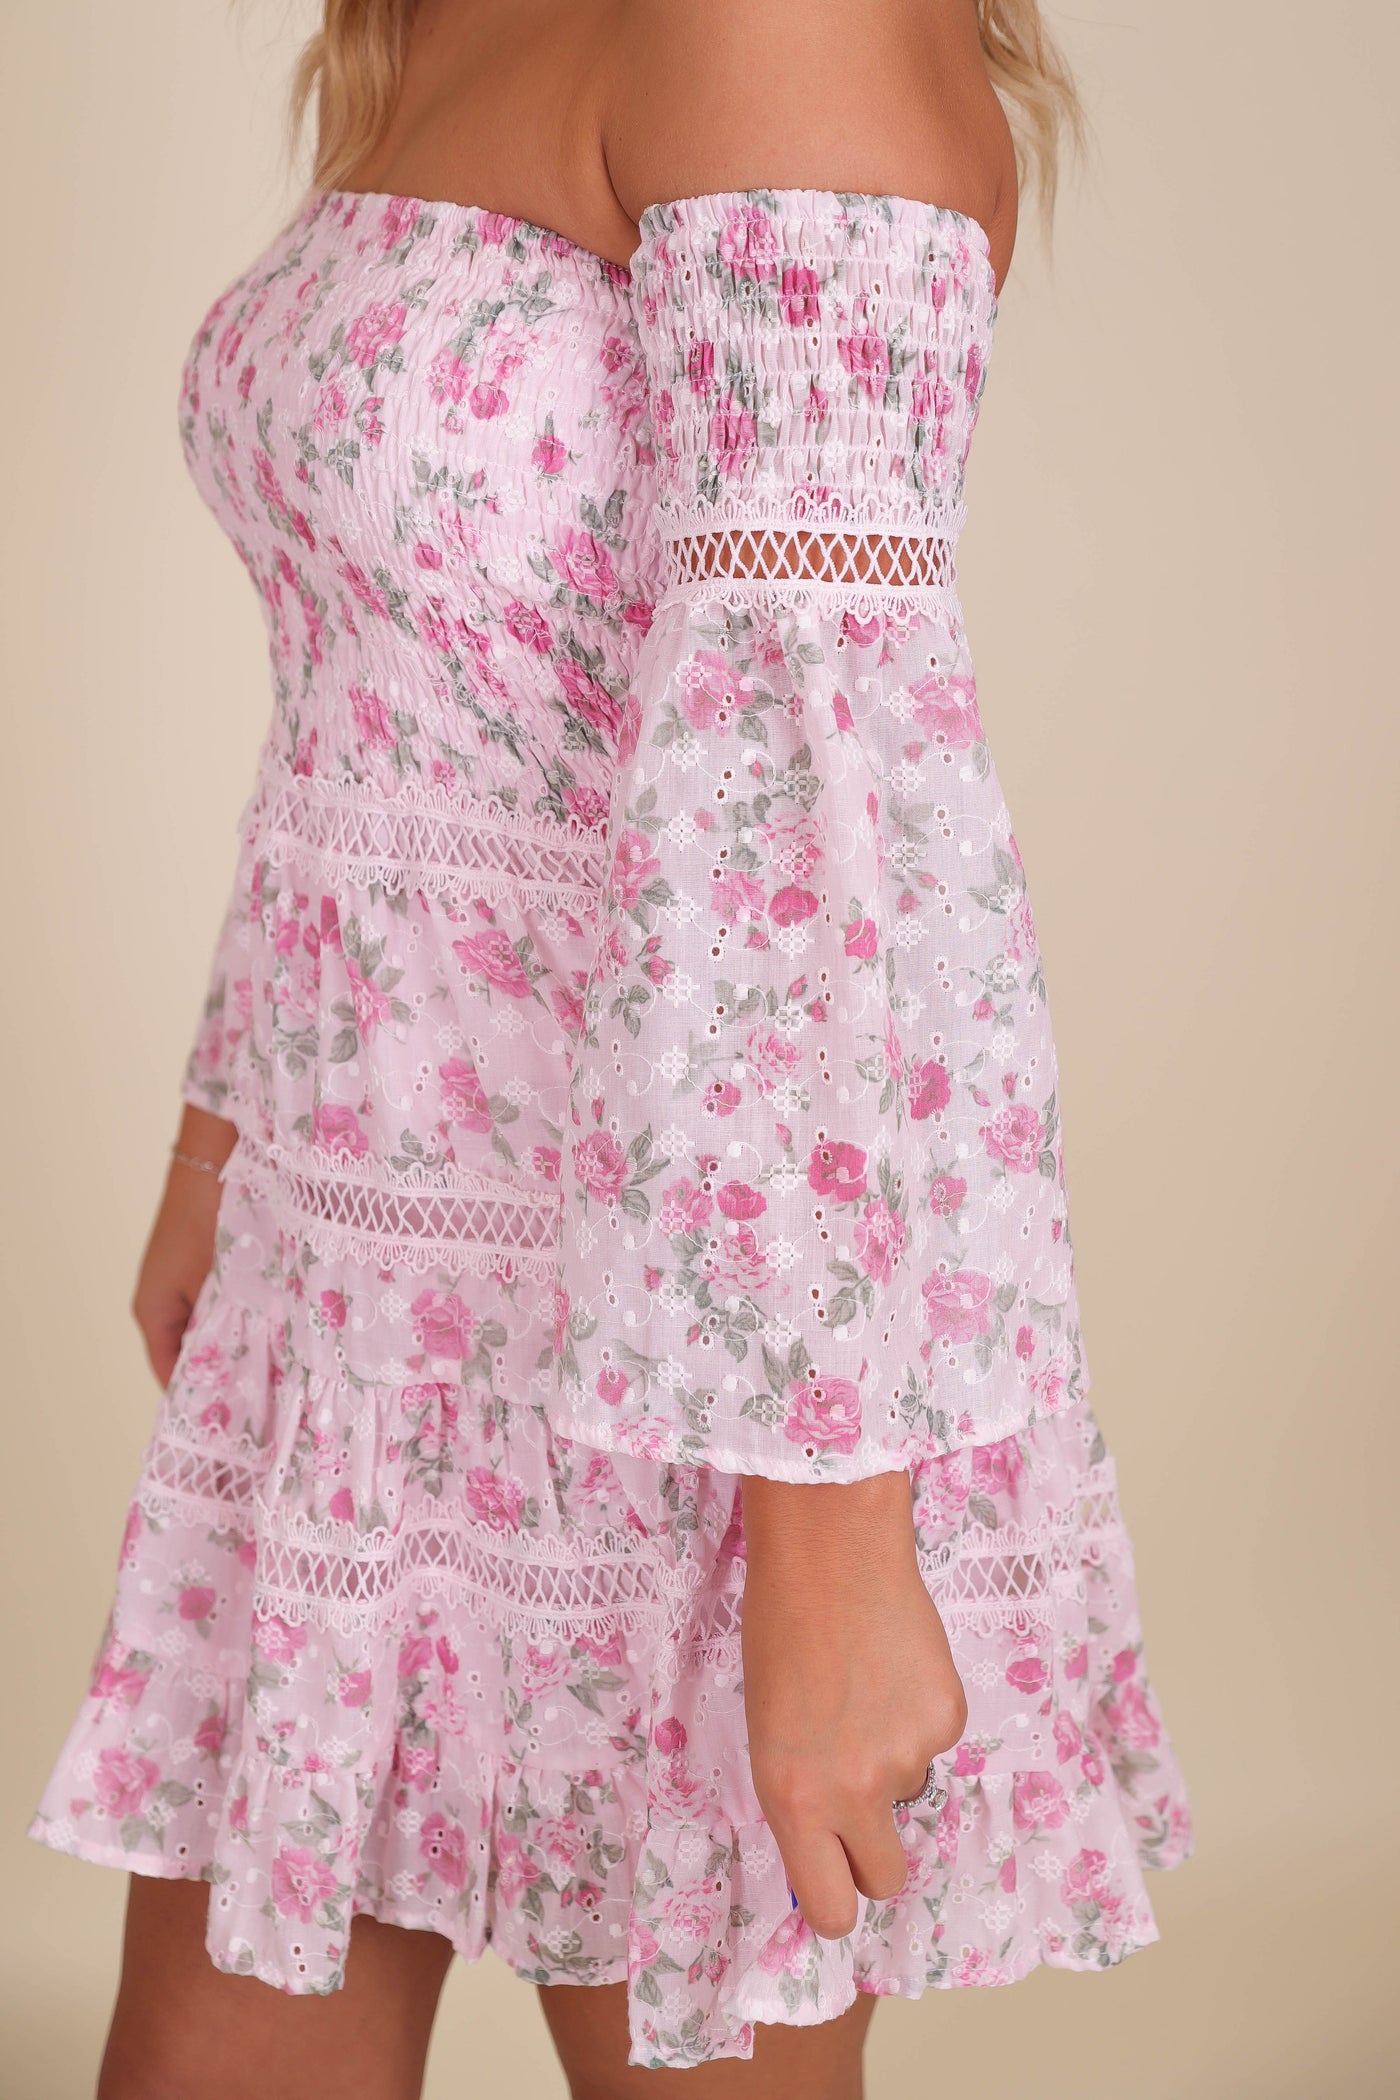 Romantic Floral Pink Dress- Fancy Floral Dress- Cottage Core Dresses- Love Shack Dupe